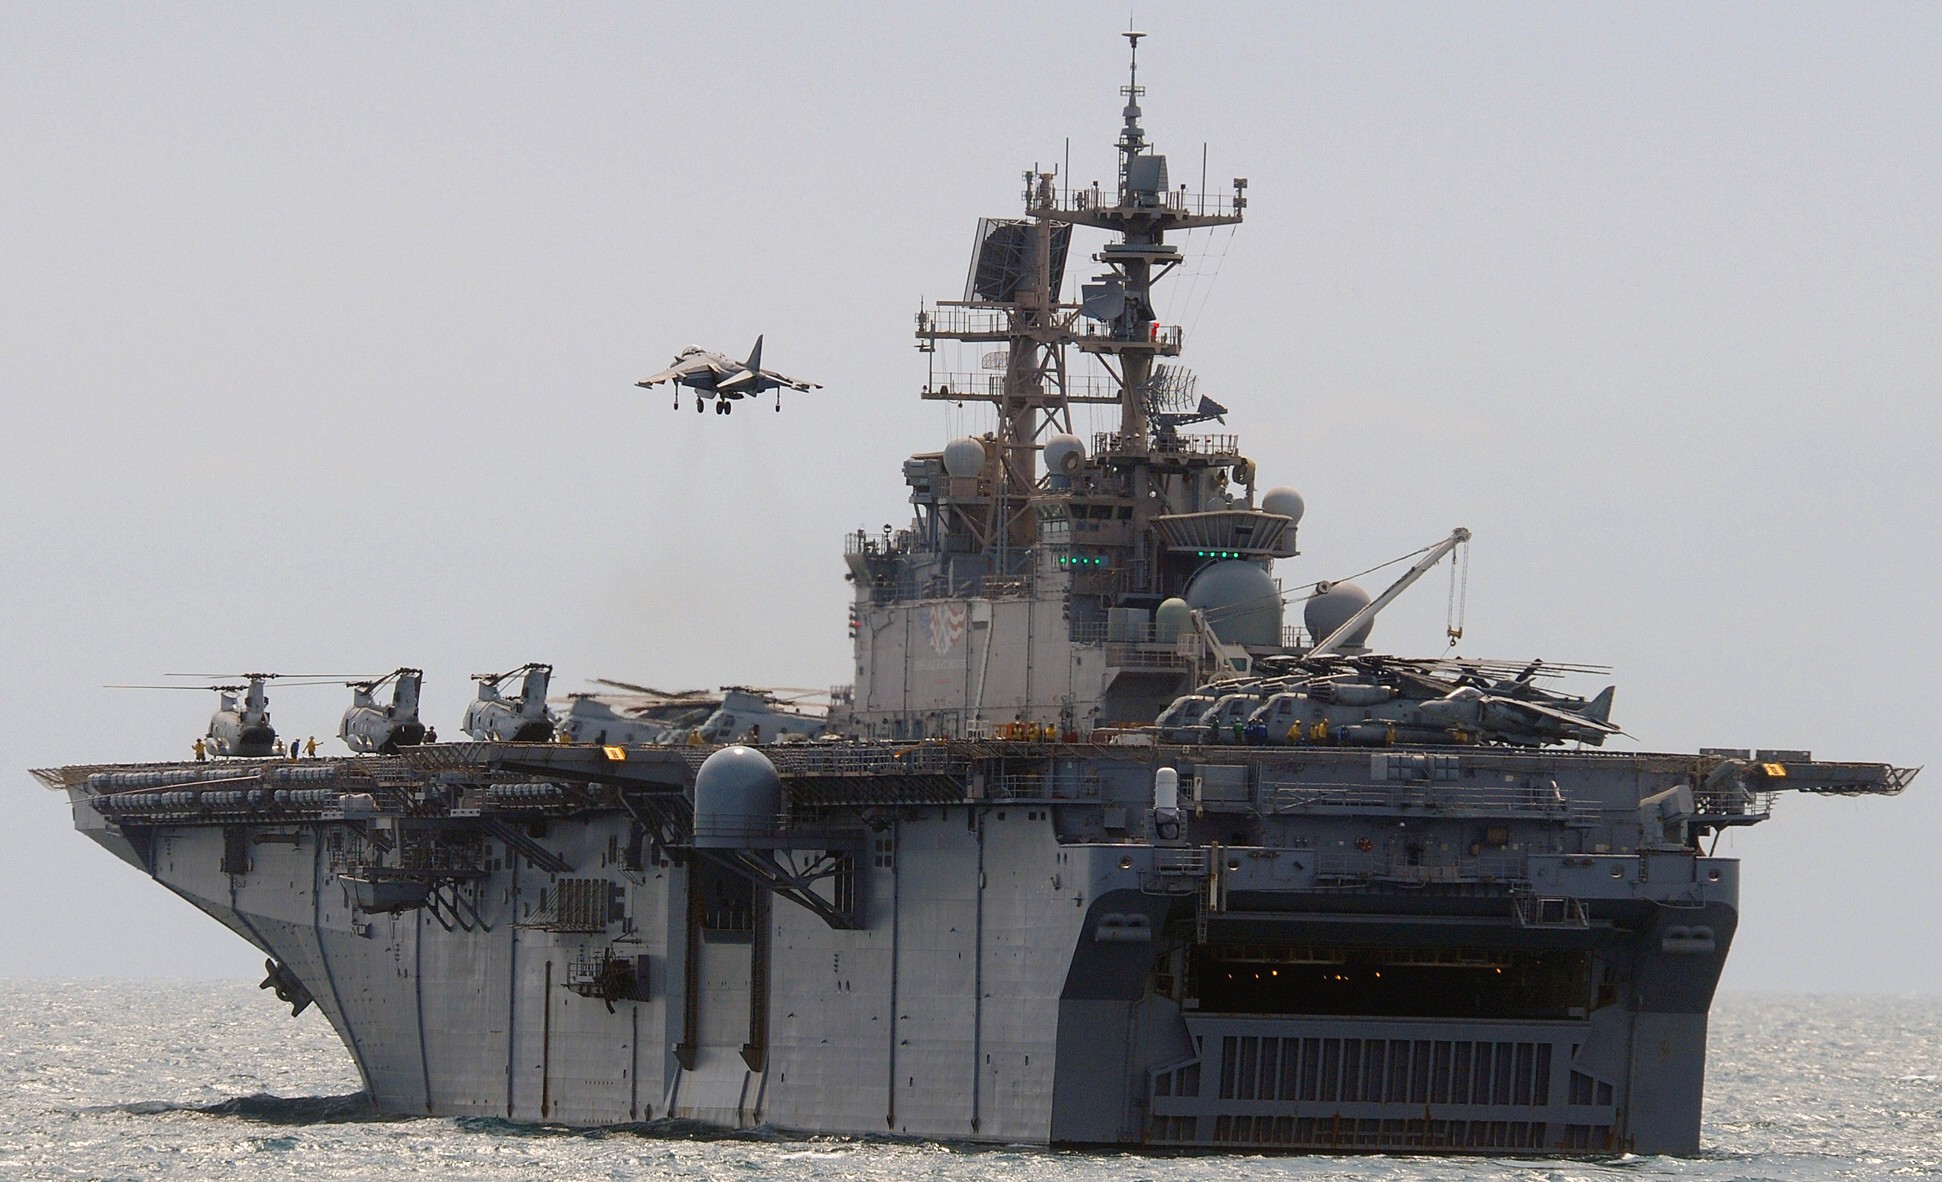 lhd-7 uss iwo jima wasp class amphibious assault ship dock landing helicopter us navy hmm-264 marines comptuex 39